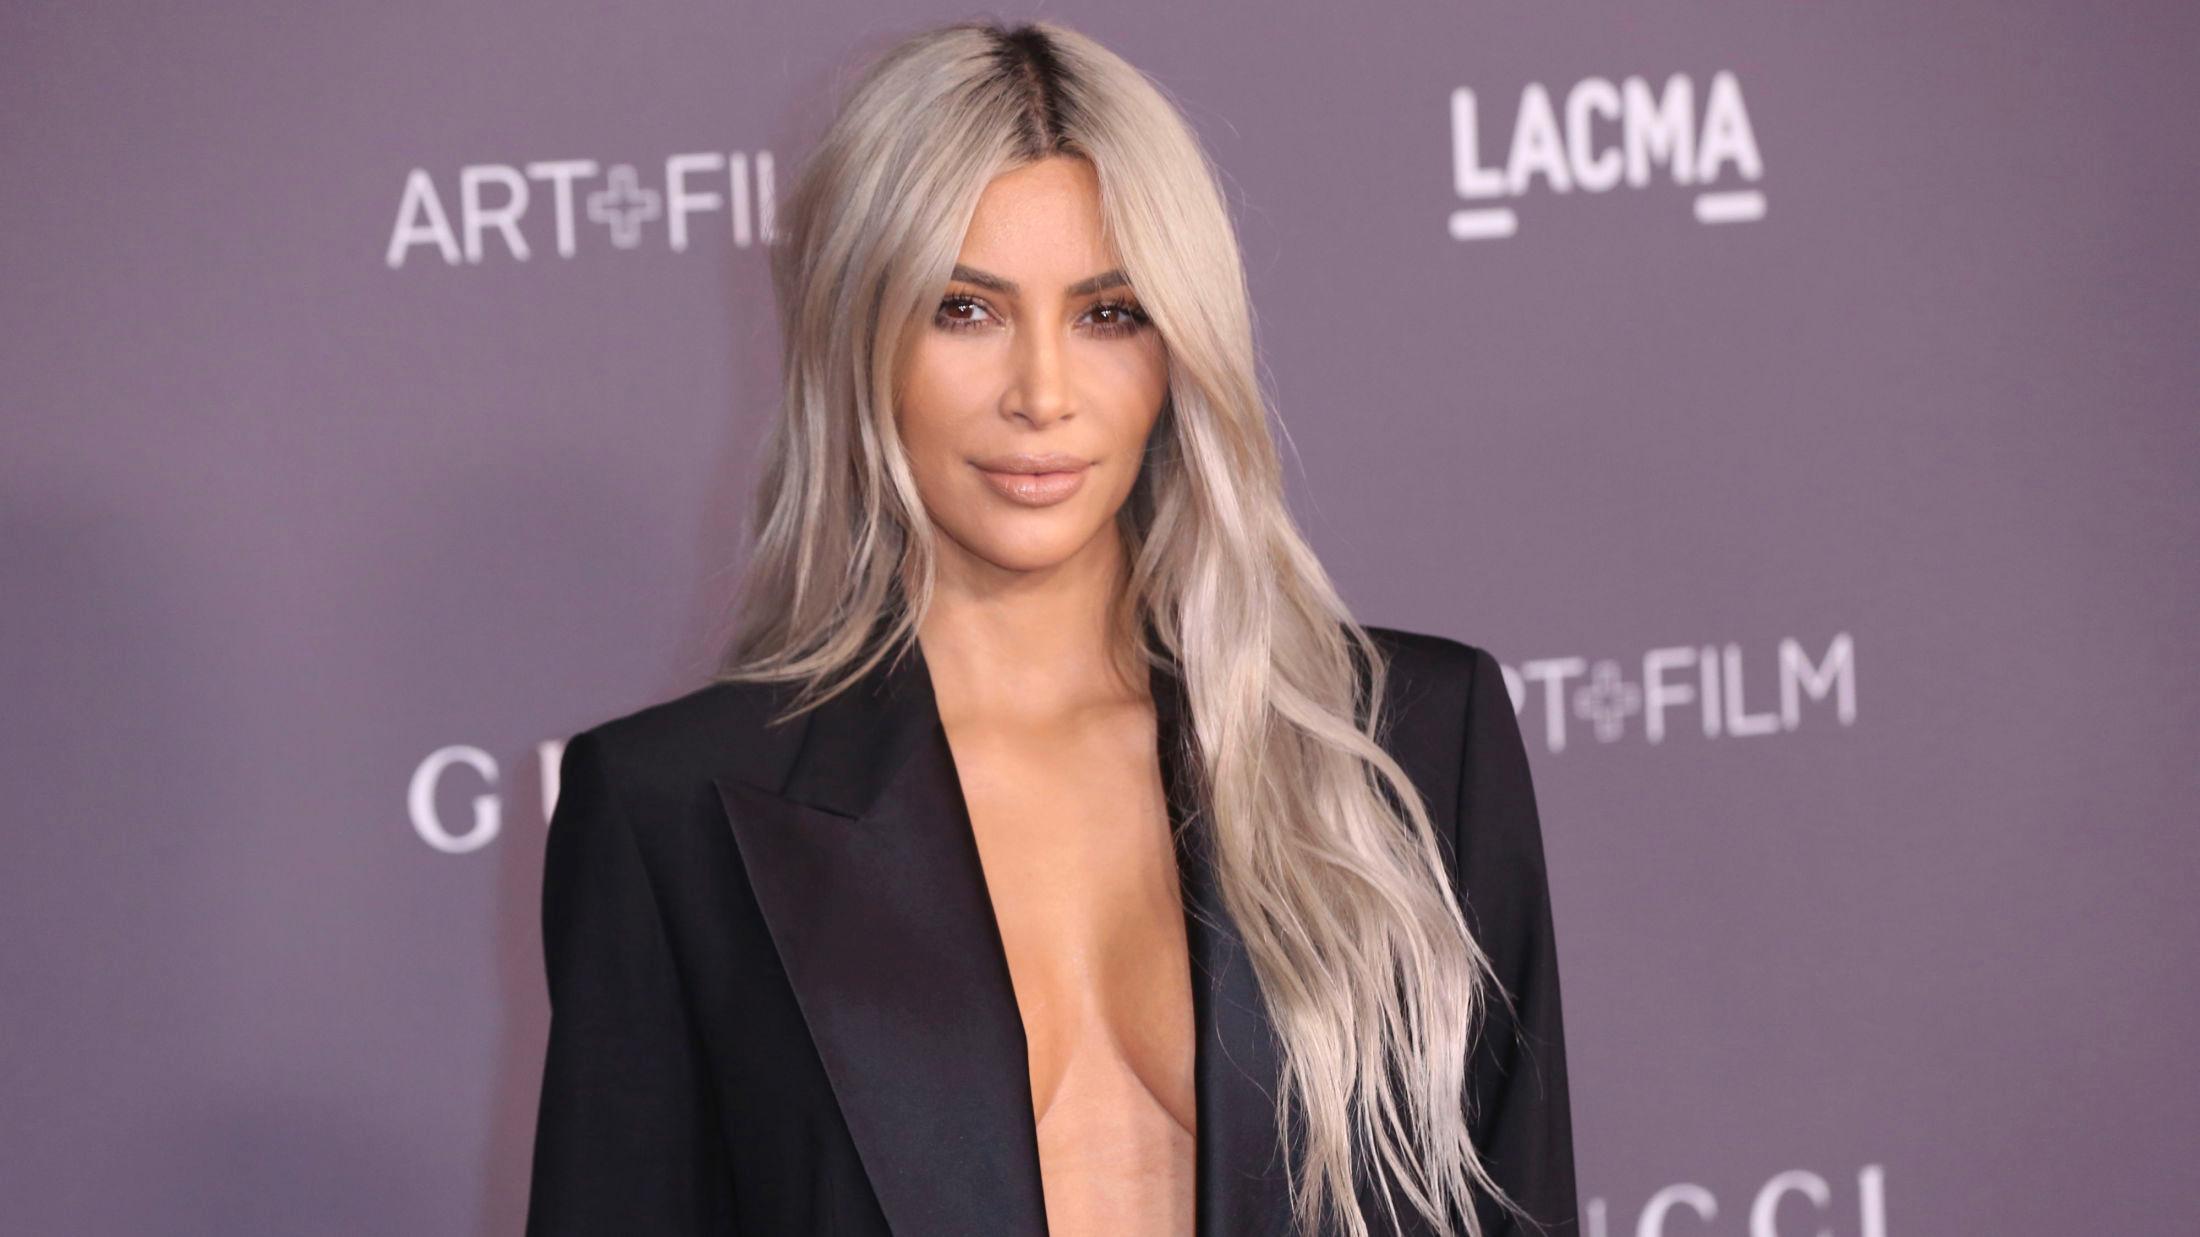 LANSERER GLITTER: Kim Kardashian West er kledd i kun glitter for å selge sin nye sminkekolleksjon. Foto: Willy Sanjuan/AP